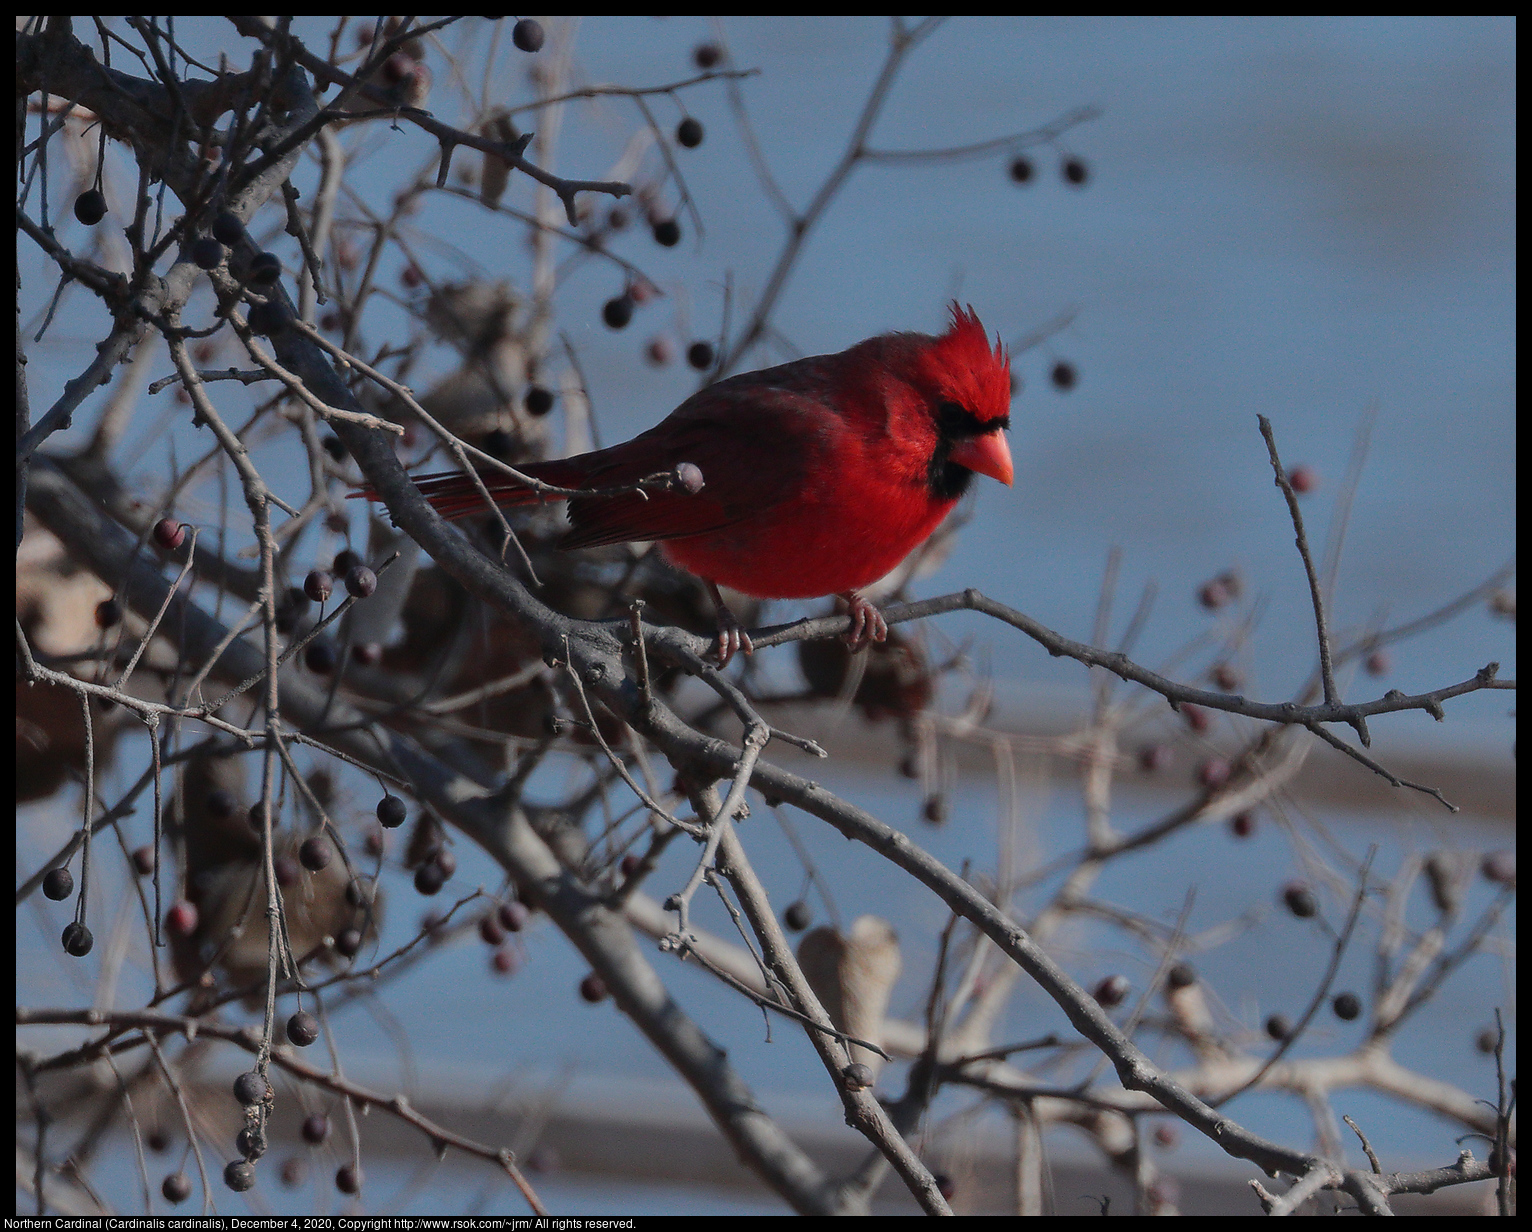 Northern Cardinal (Cardinalis cardinalis), December 4, 2020